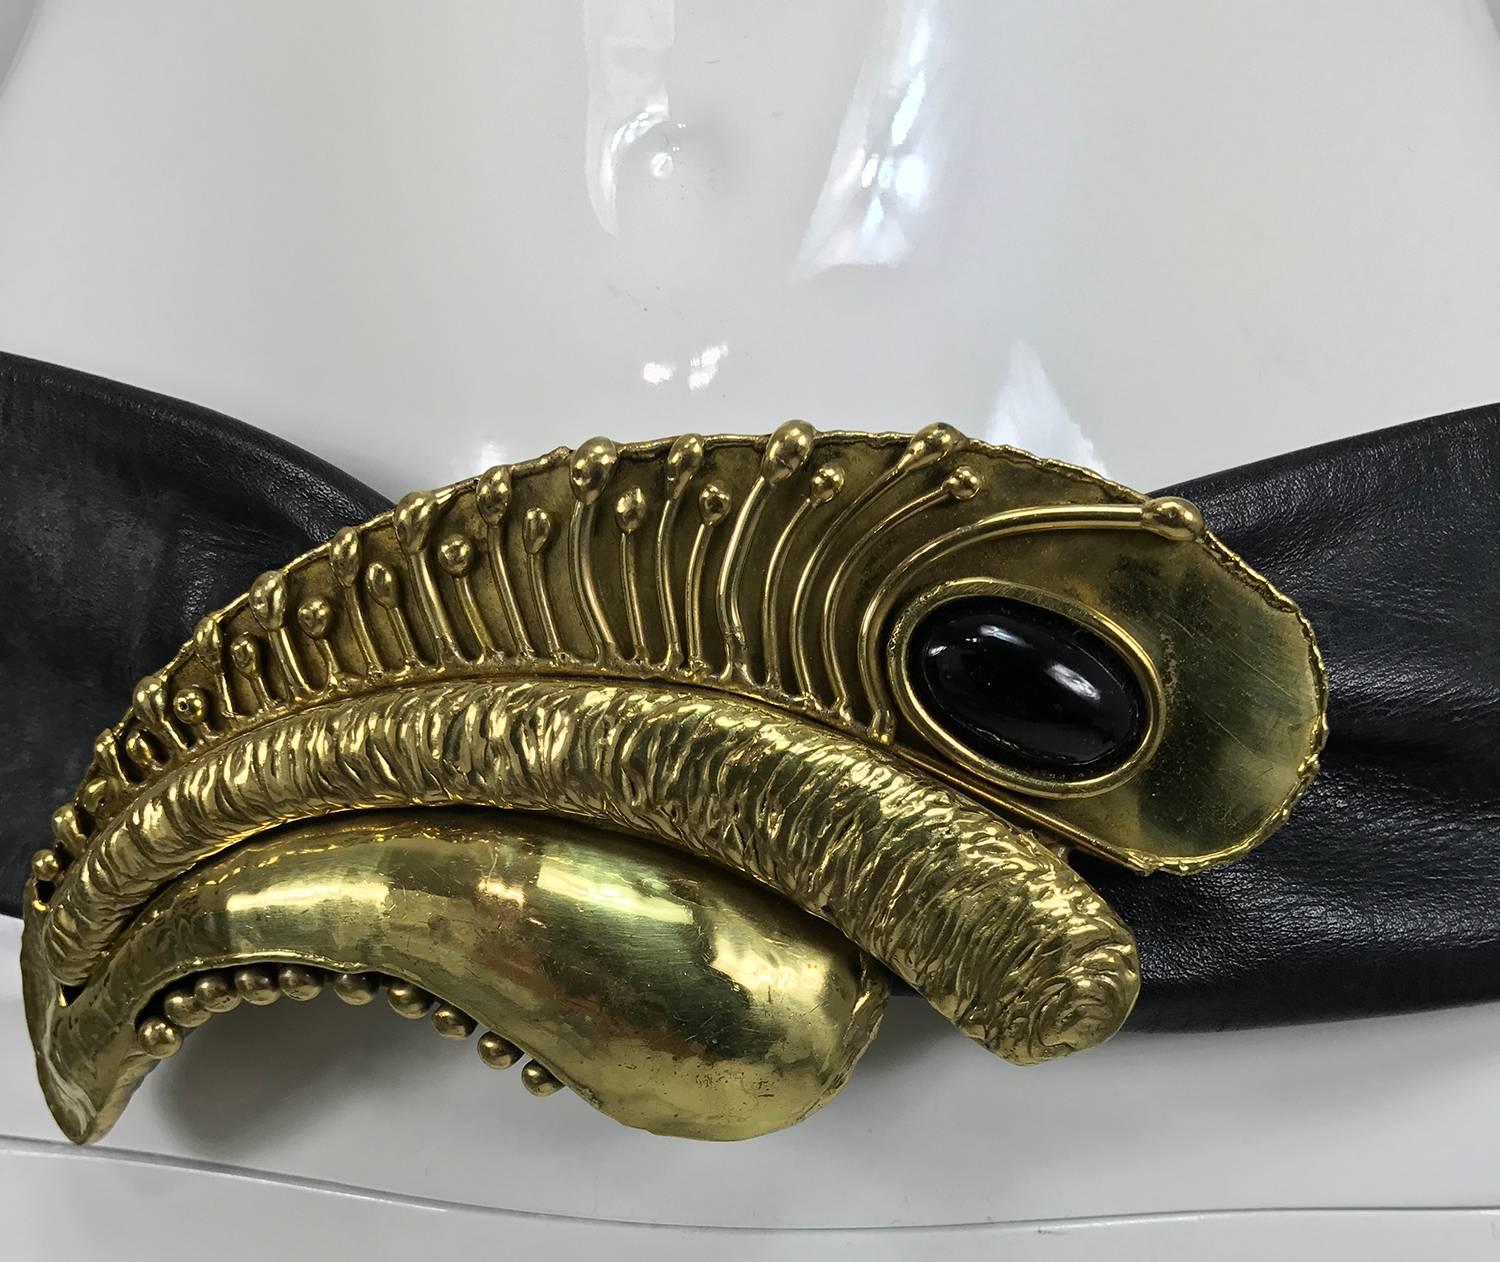 Vintage modernist brass and onyx belt buckle and leather belt from the  années 1980... La grande boucle unique est sertie d'un cabochon en onyx noir... Marqué made in Mexico... Ceinture originale réglable en cuir noir souple....
Les mesures sont